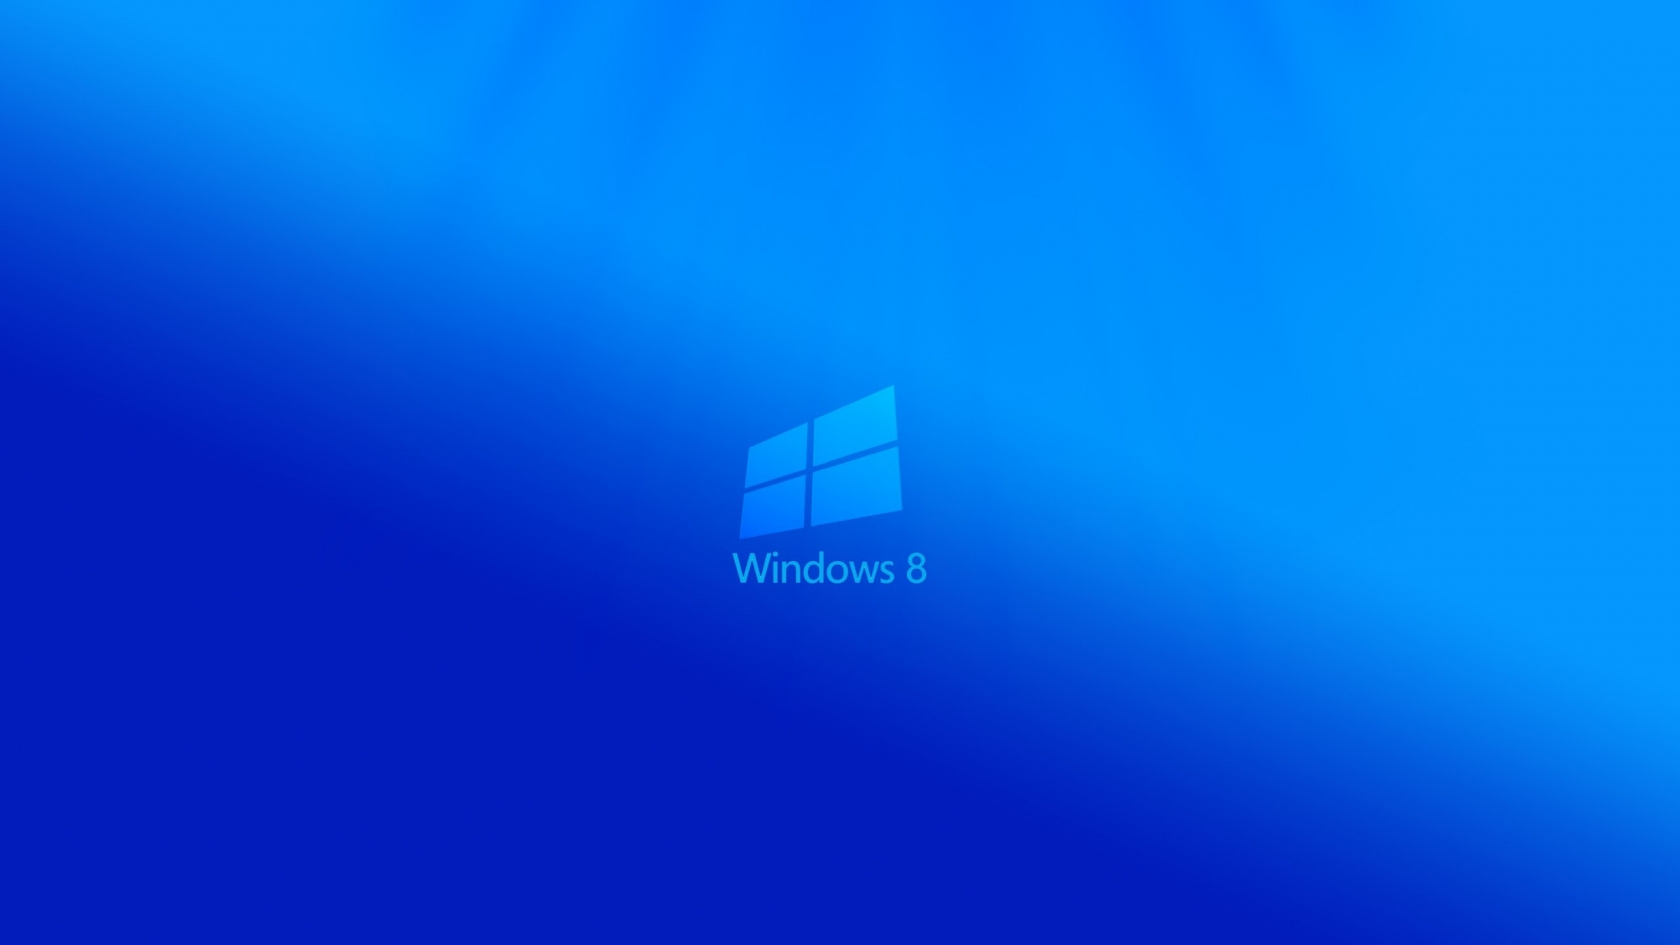 Windows 8 Light for 1680 x 945 HDTV resolution